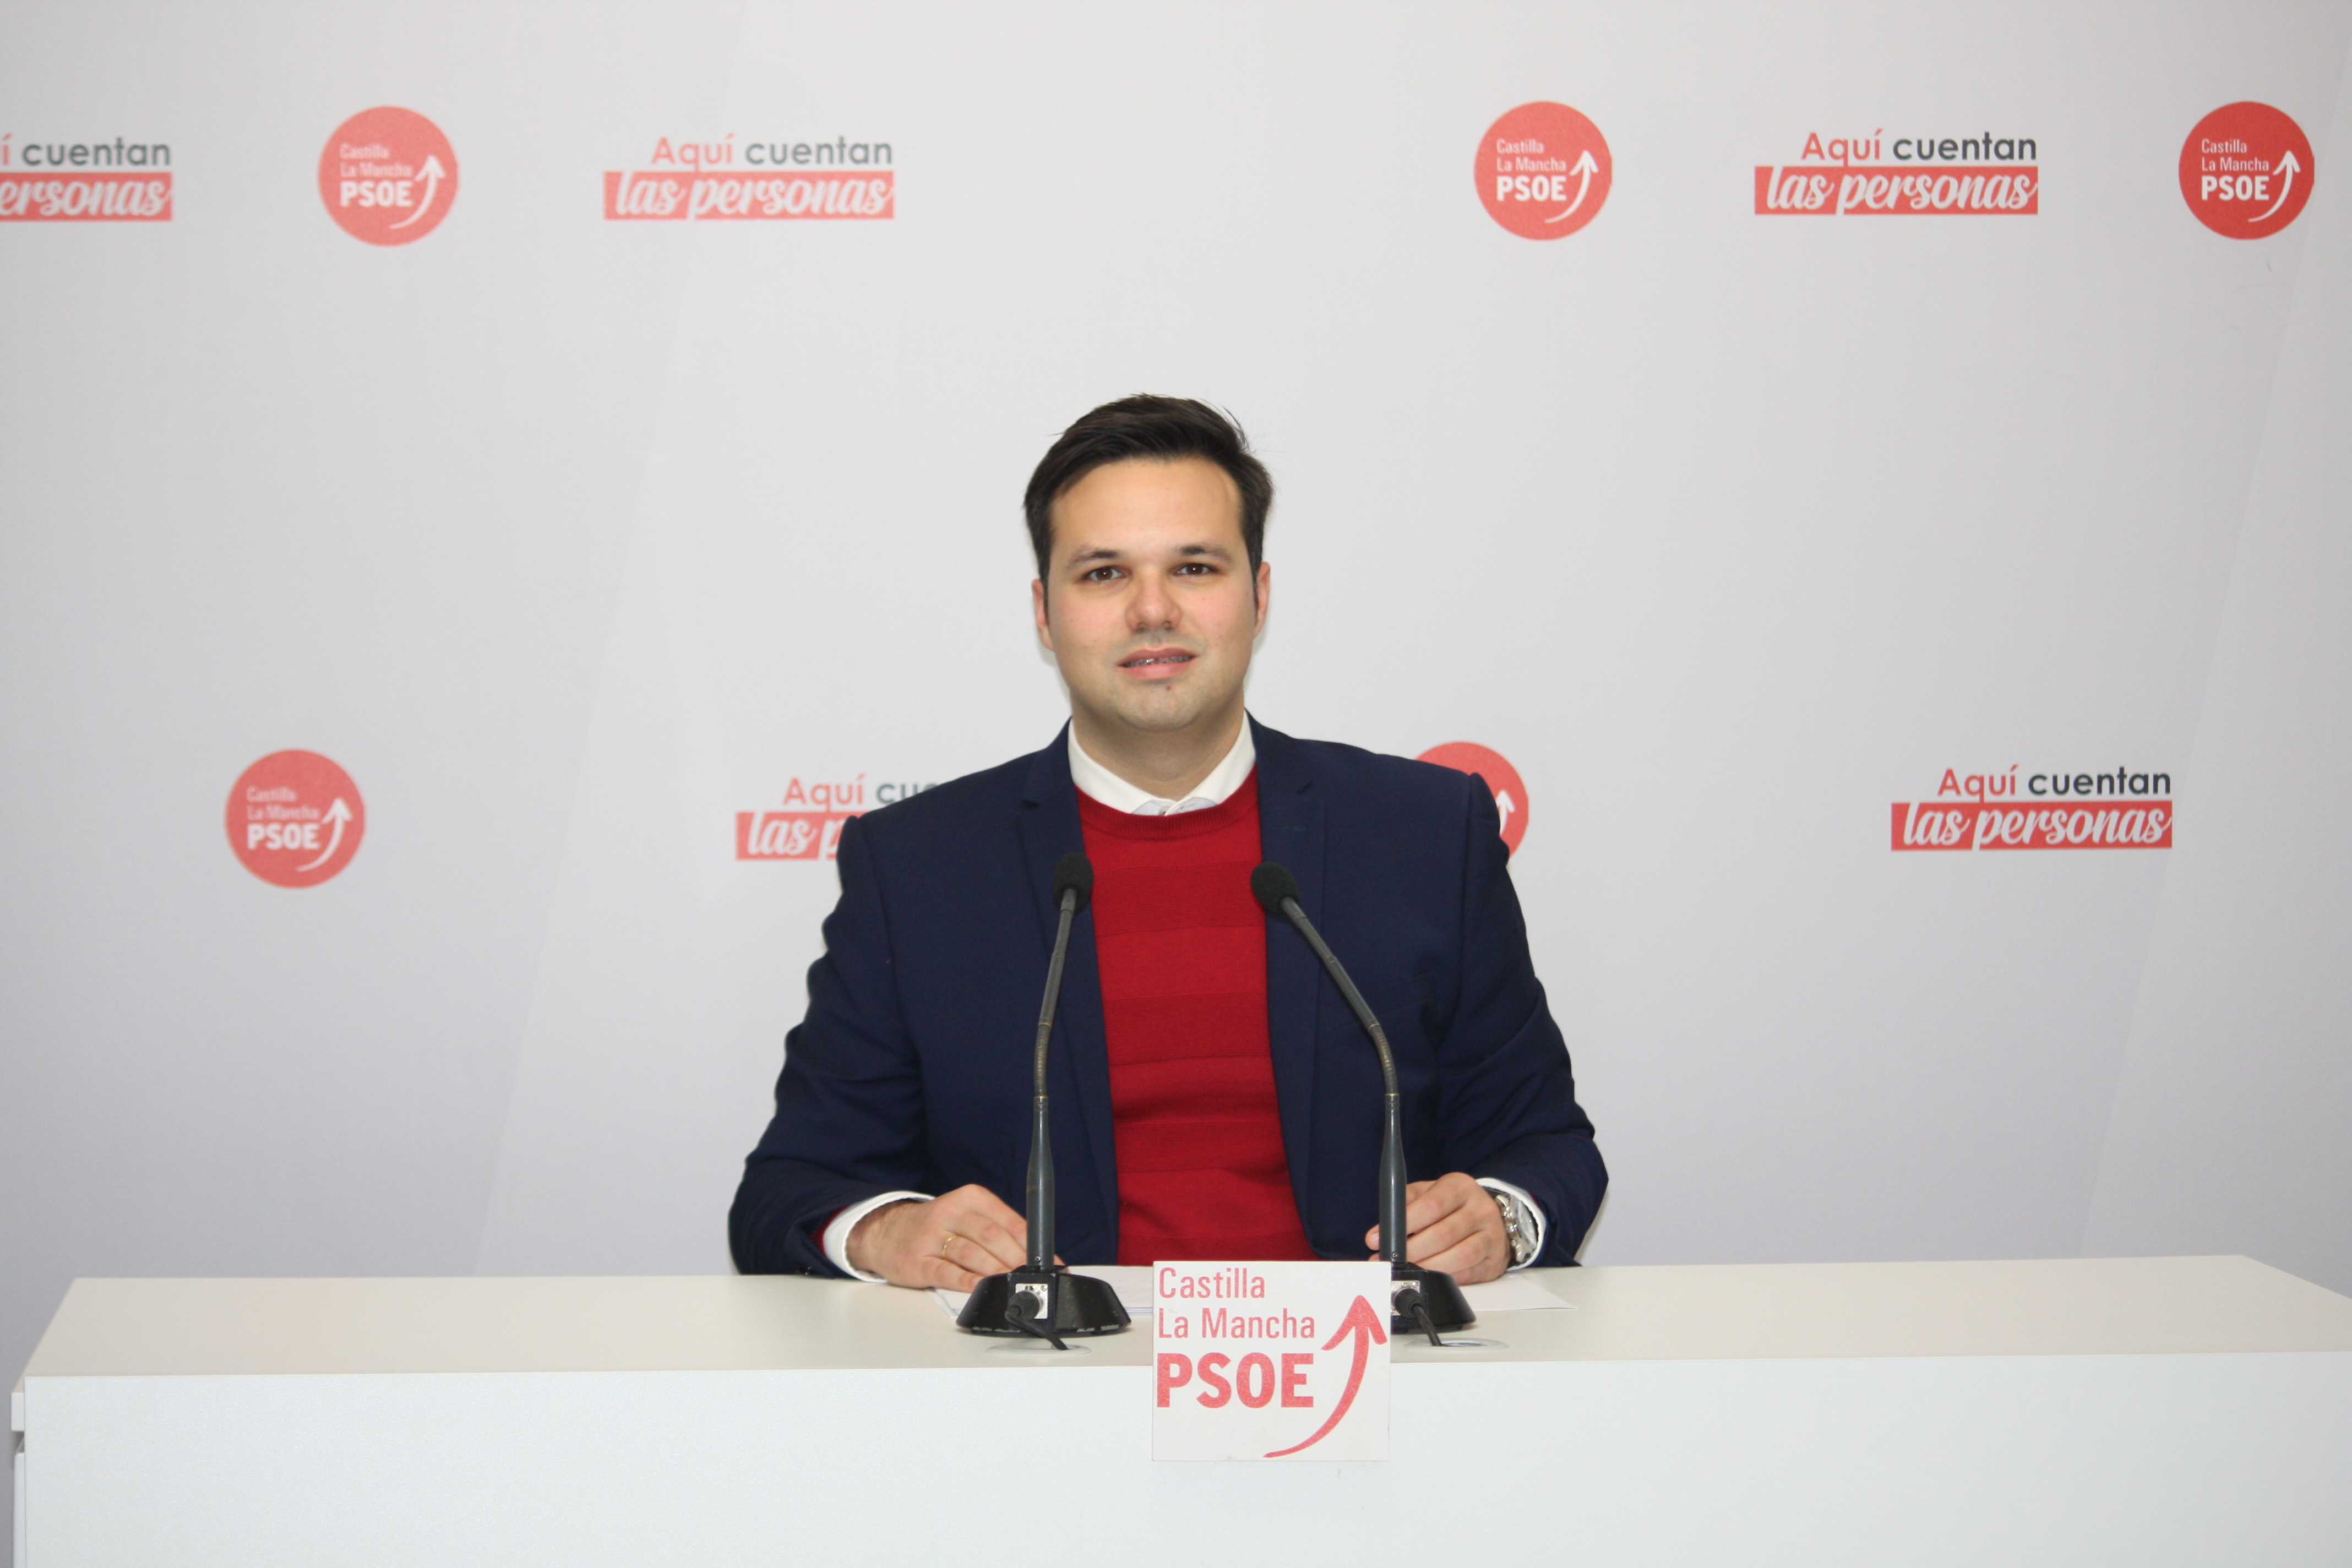 El PSOE de CLM duda de la credibilidad de las enmiendas del PP y pregunta «si las ha hecho el señor Esteban o el señor Echániz»